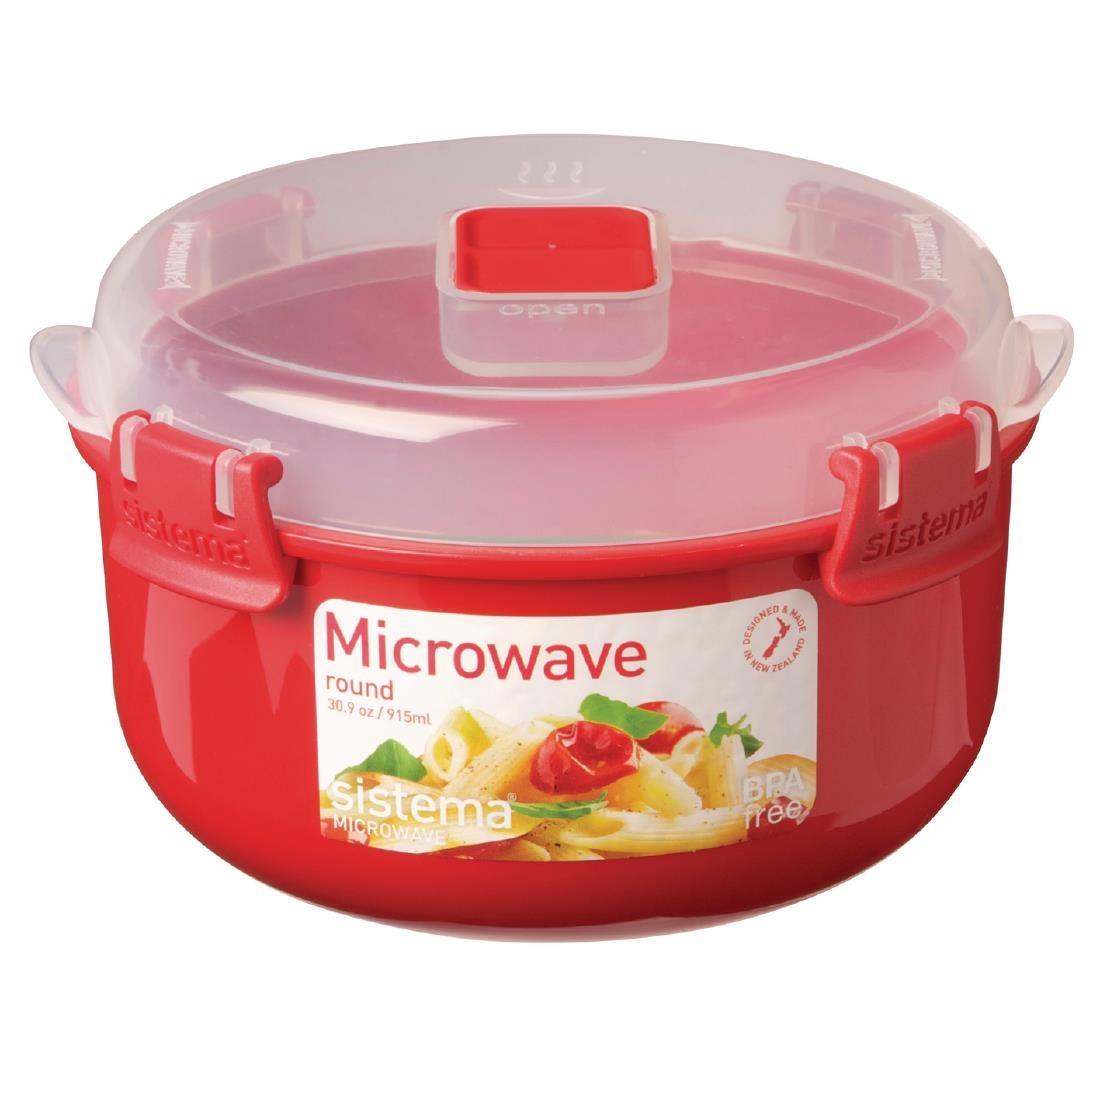 Sistema Round Microwave Bowl - GJ490  - 1